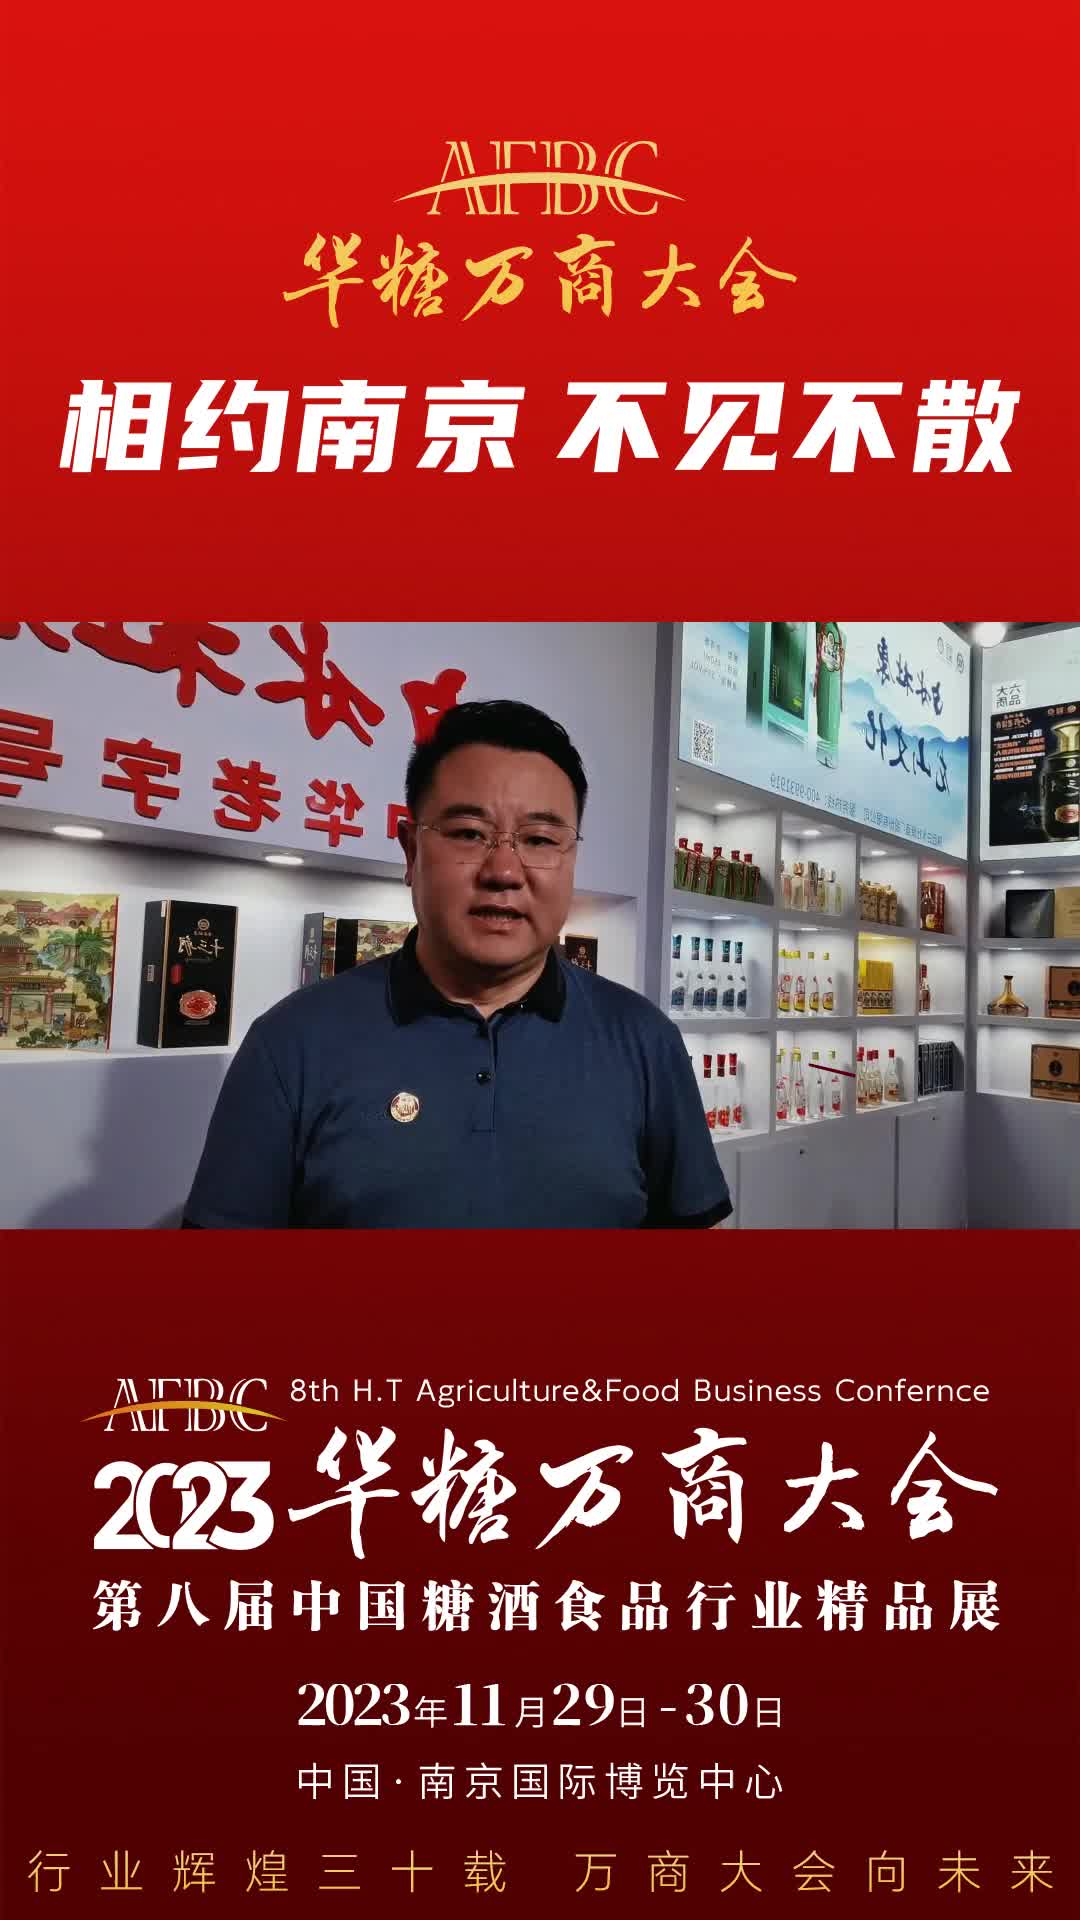 11月29日-30日，中国·南京，陕西杜康集团副总裁景枫与您相约万商大会！